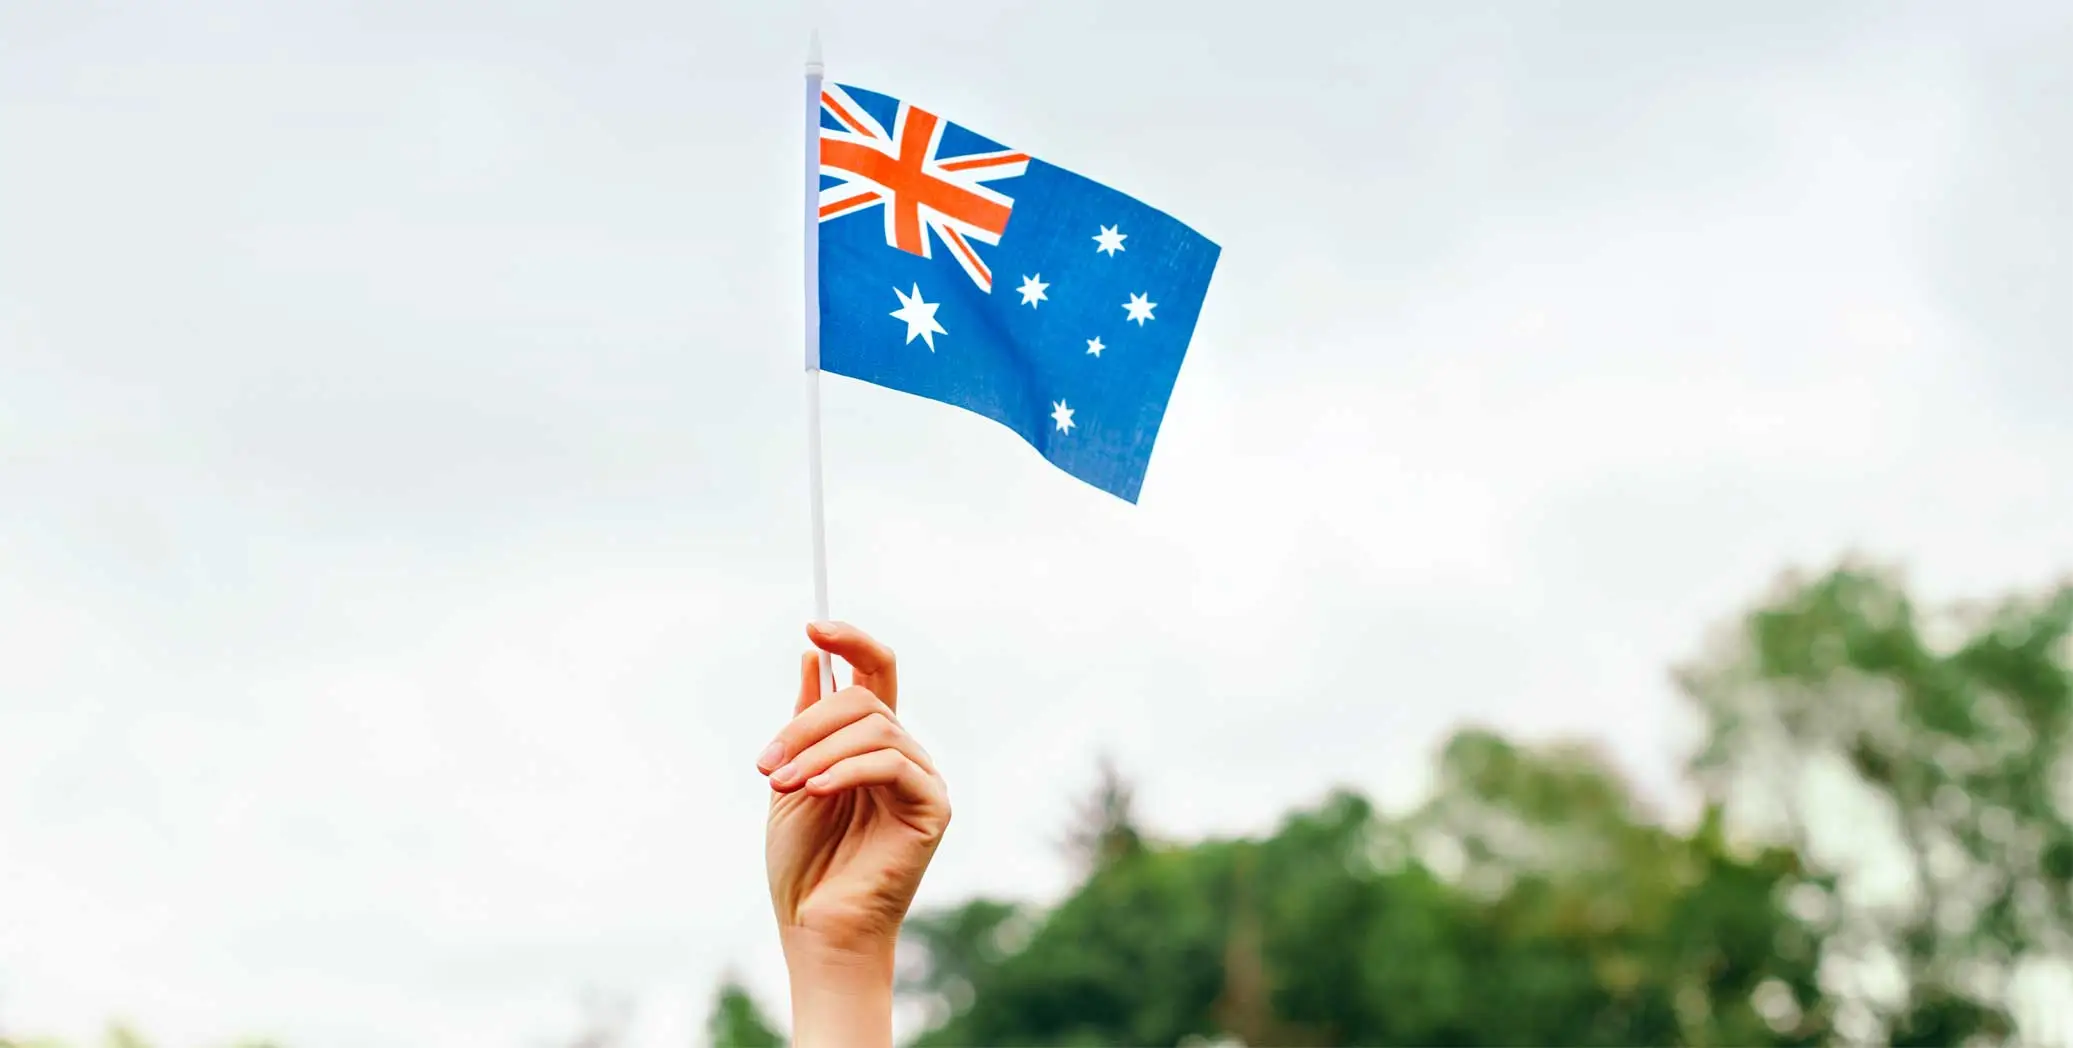 オーストラリアの国旗を持つ手の写真